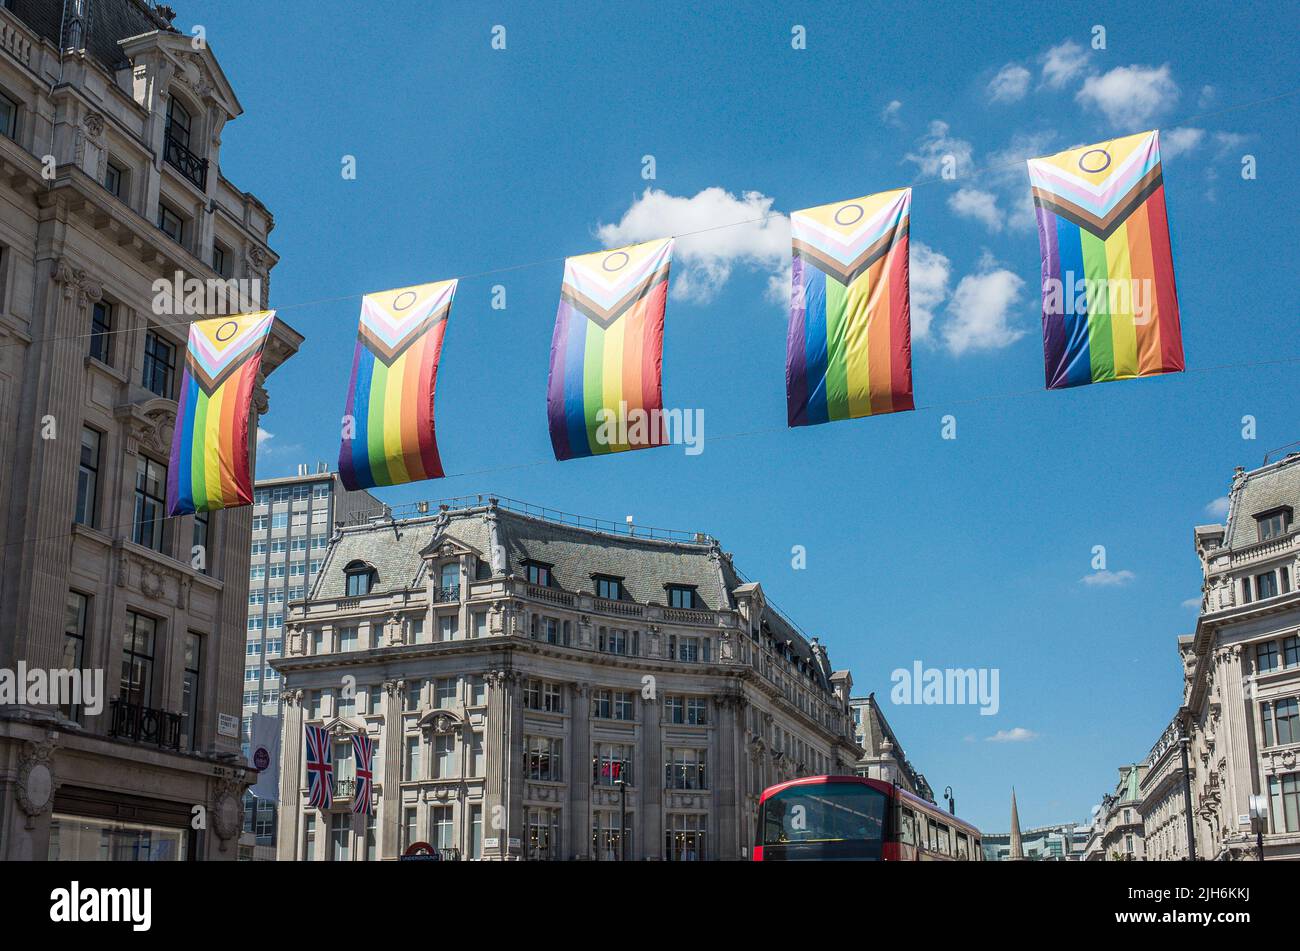 Les drapeaux Pride Intersex-inclusive pendent à Regents Street, centre de Londres, été 2022, Angleterre, Royaume-Uni. Banque D'Images